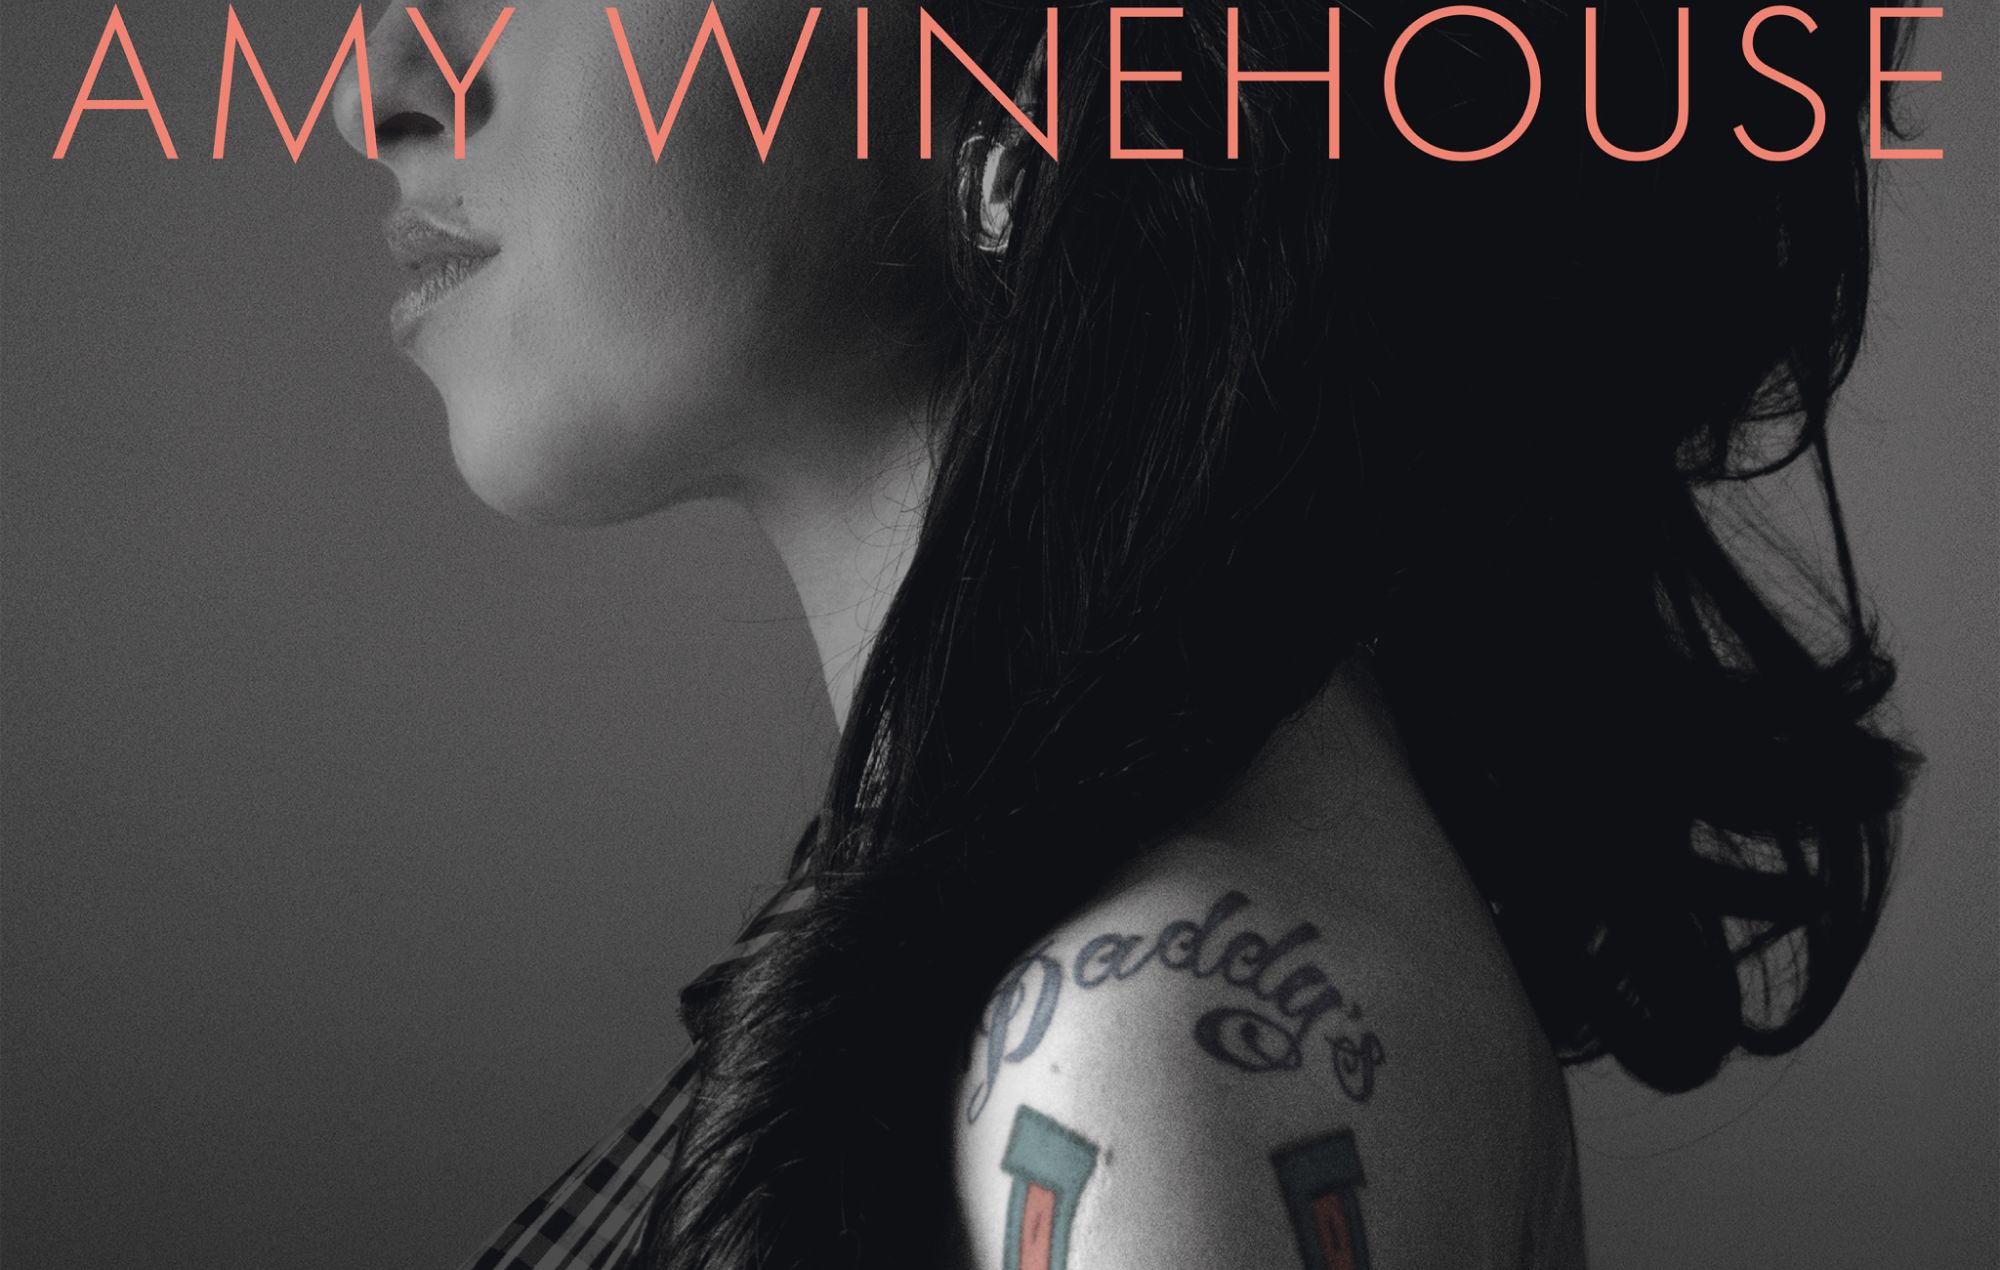 Anunciada la banda sonora de la nueva película de Amy Winehouse "Back To Black", que incluye una canción original de Nick Cave